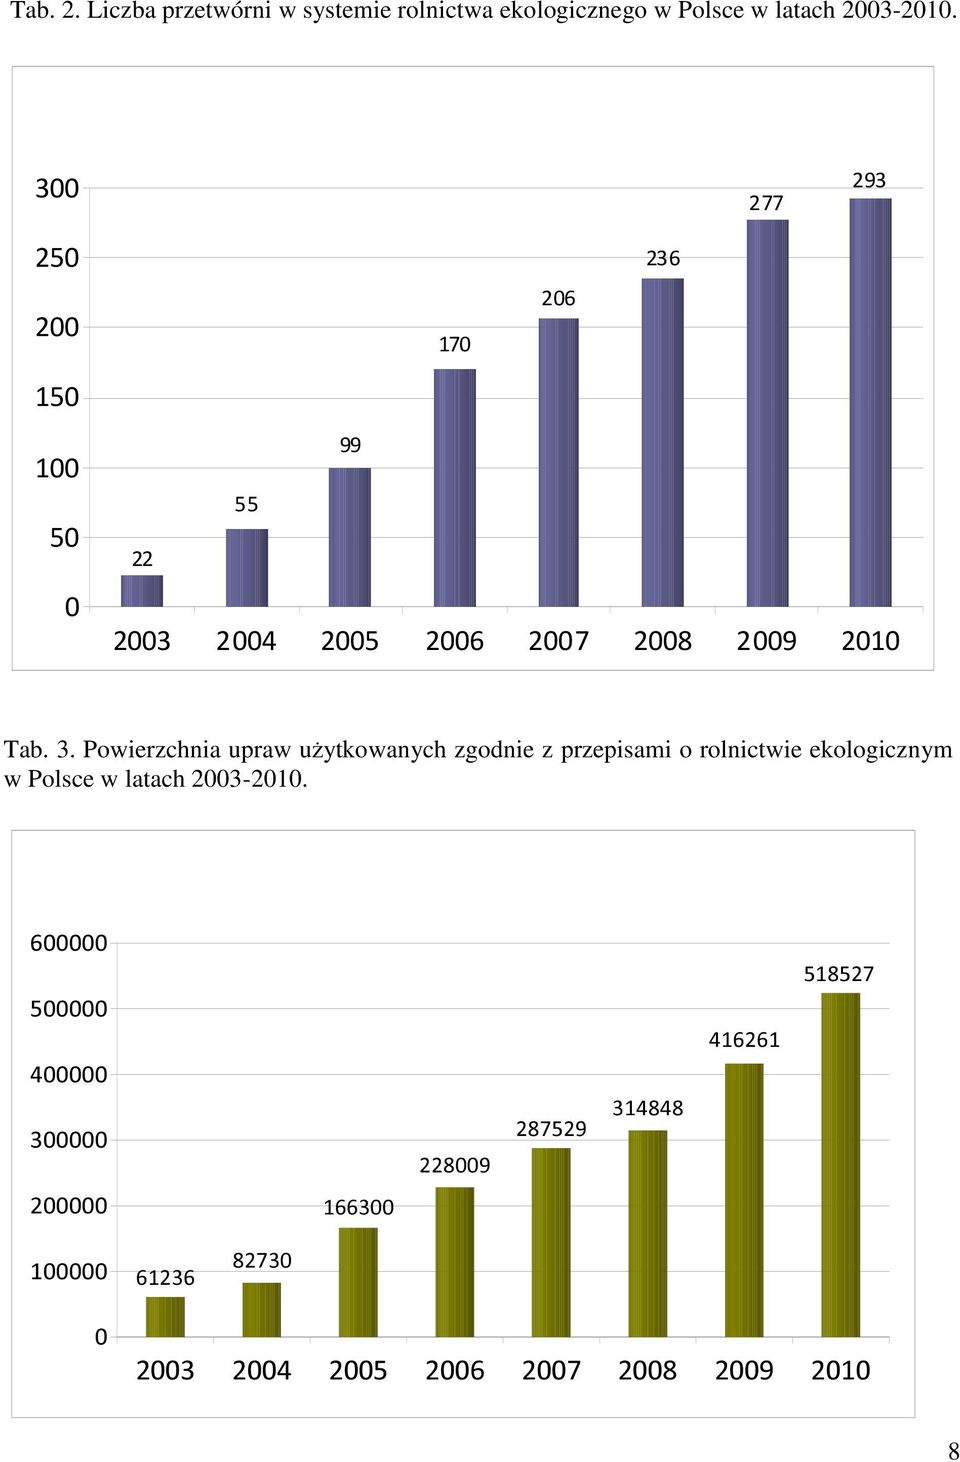 Powierzchnia upraw użytkowanych zgodnie z przepisami o rolnictwie ekologicznym w Polsce w latach 2003-2010.